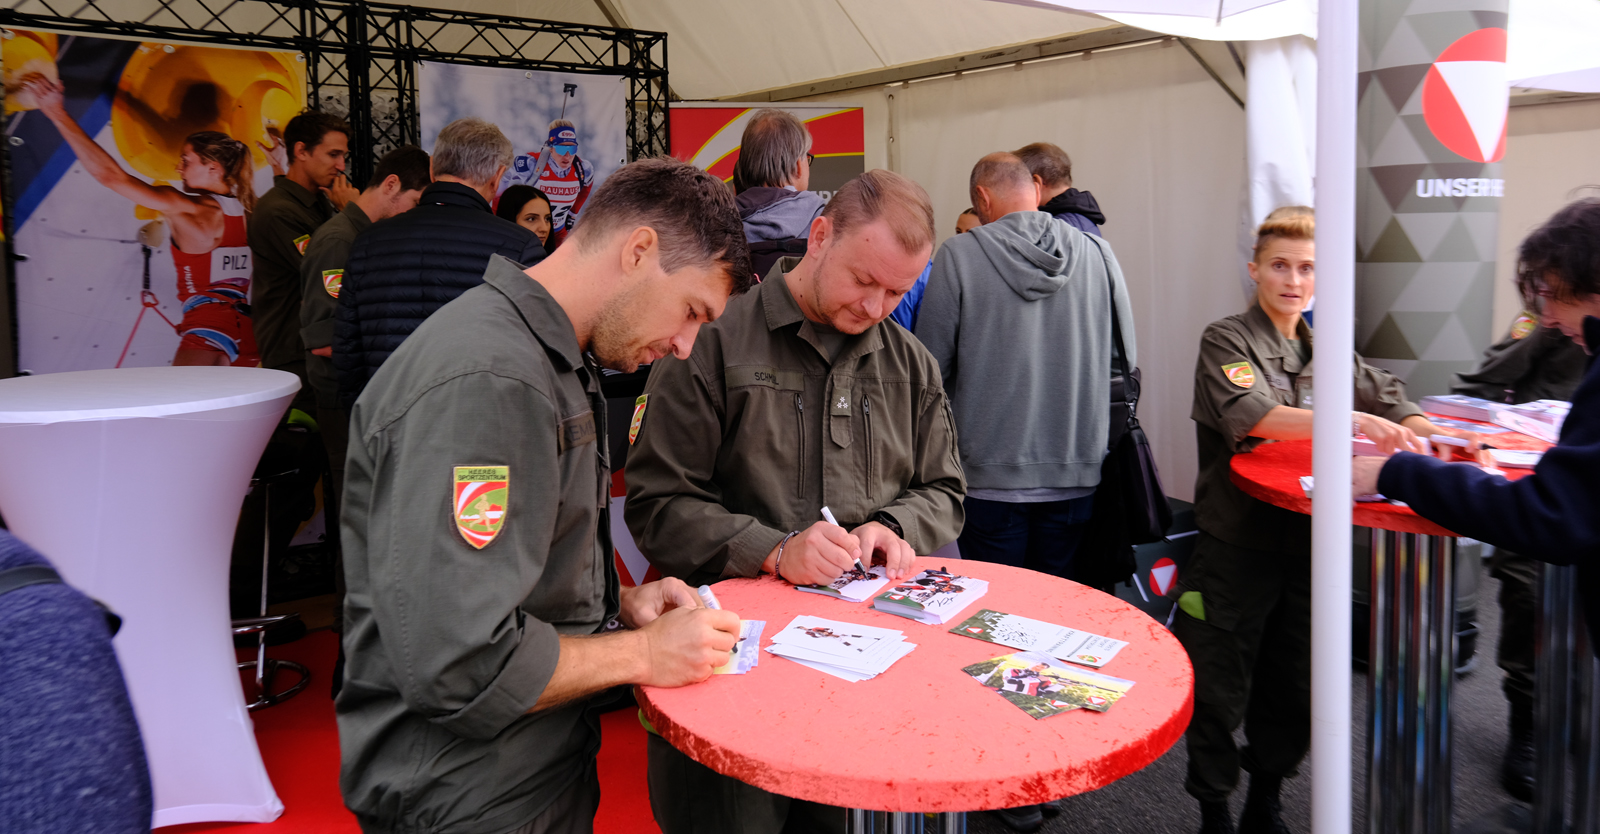 Martin Strempfl und Alexander Schmirl gaben am Stand des Österreichischen Bundesheeres Autogramme © Florian Neururer